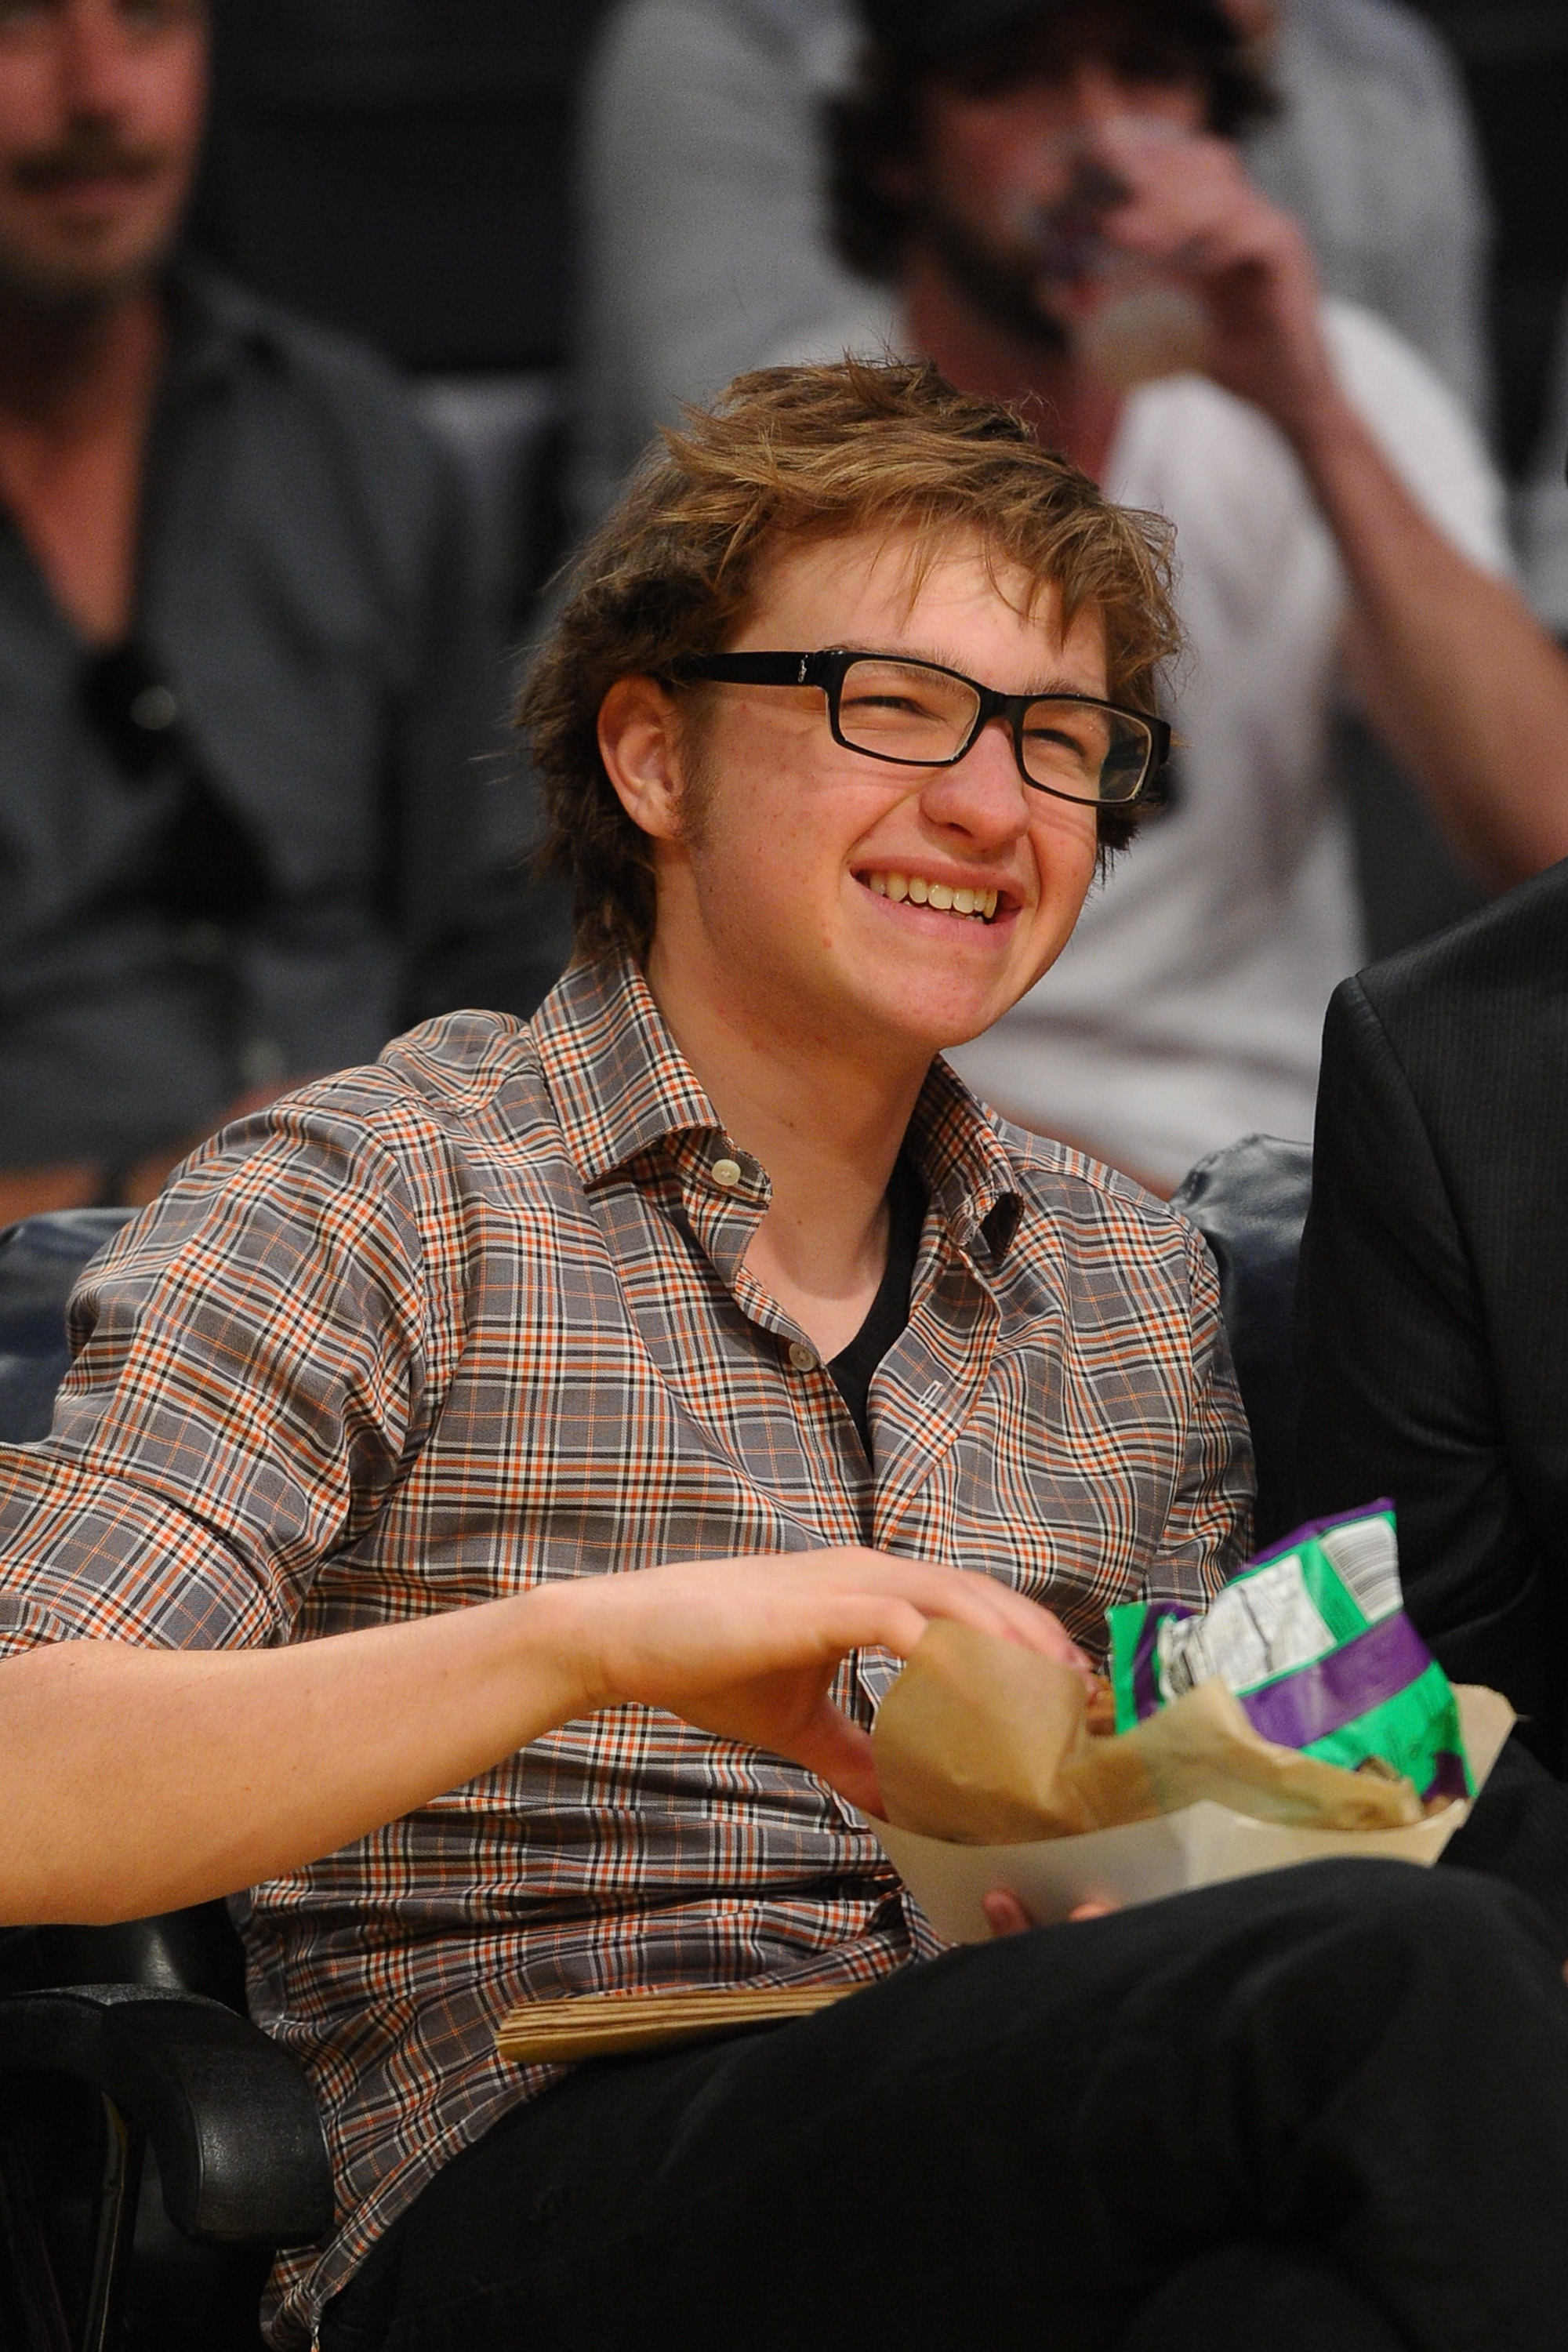 Angus T. Jones lors d'un match de basket à Los Angeles en 2011 | Source : Getty Images